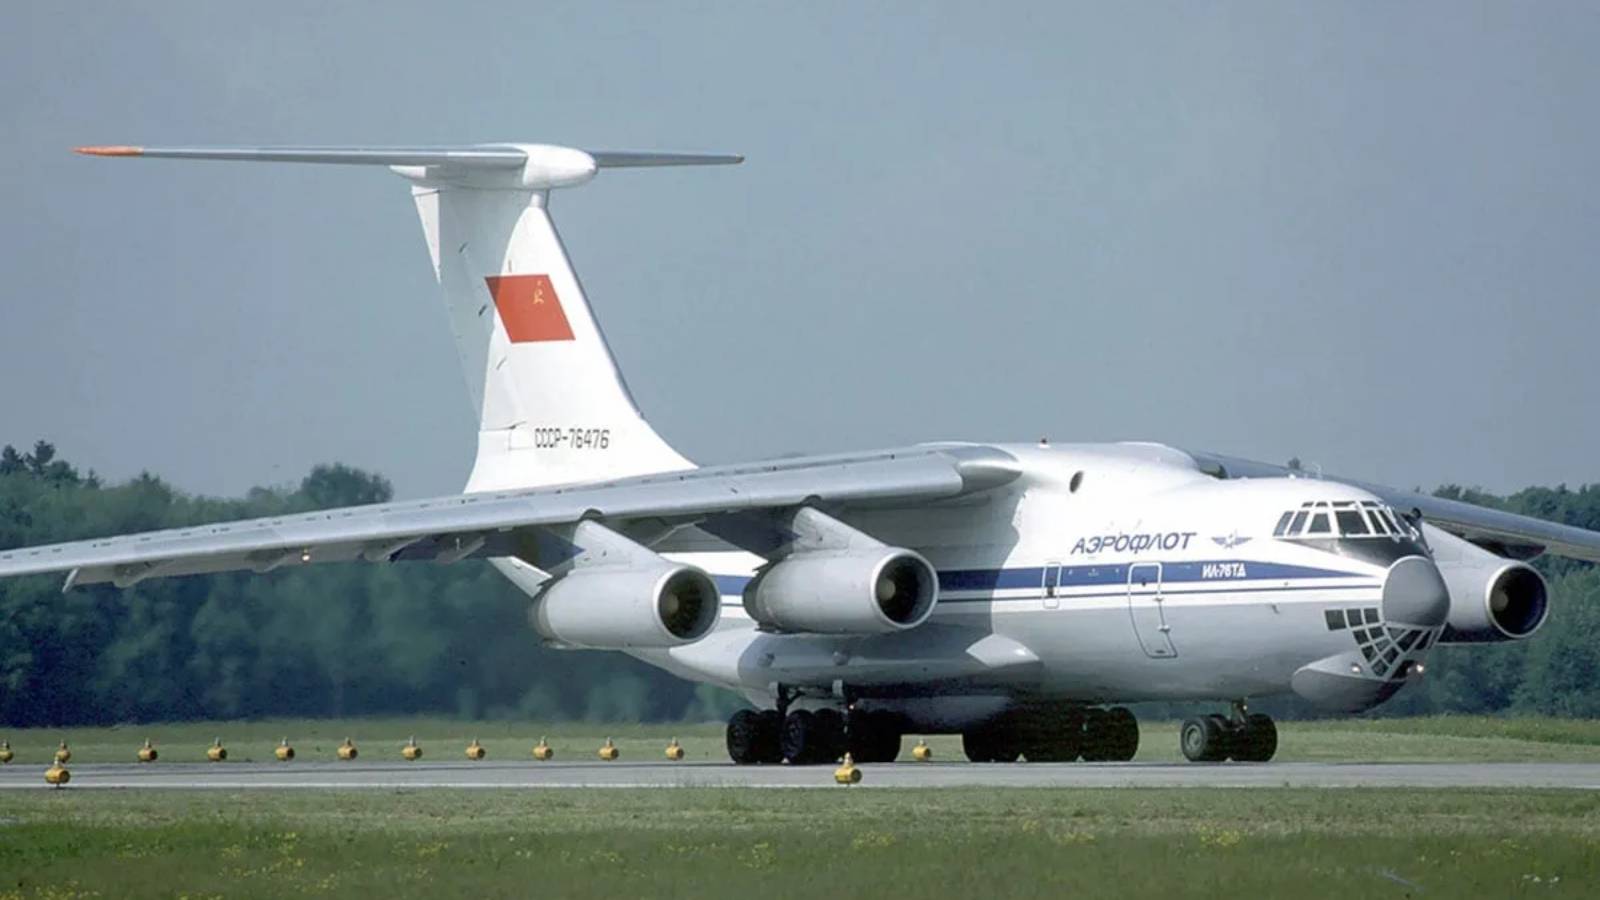 Transnistria se prepara para recibir aviones rusos Tiraspol República de Moldavia